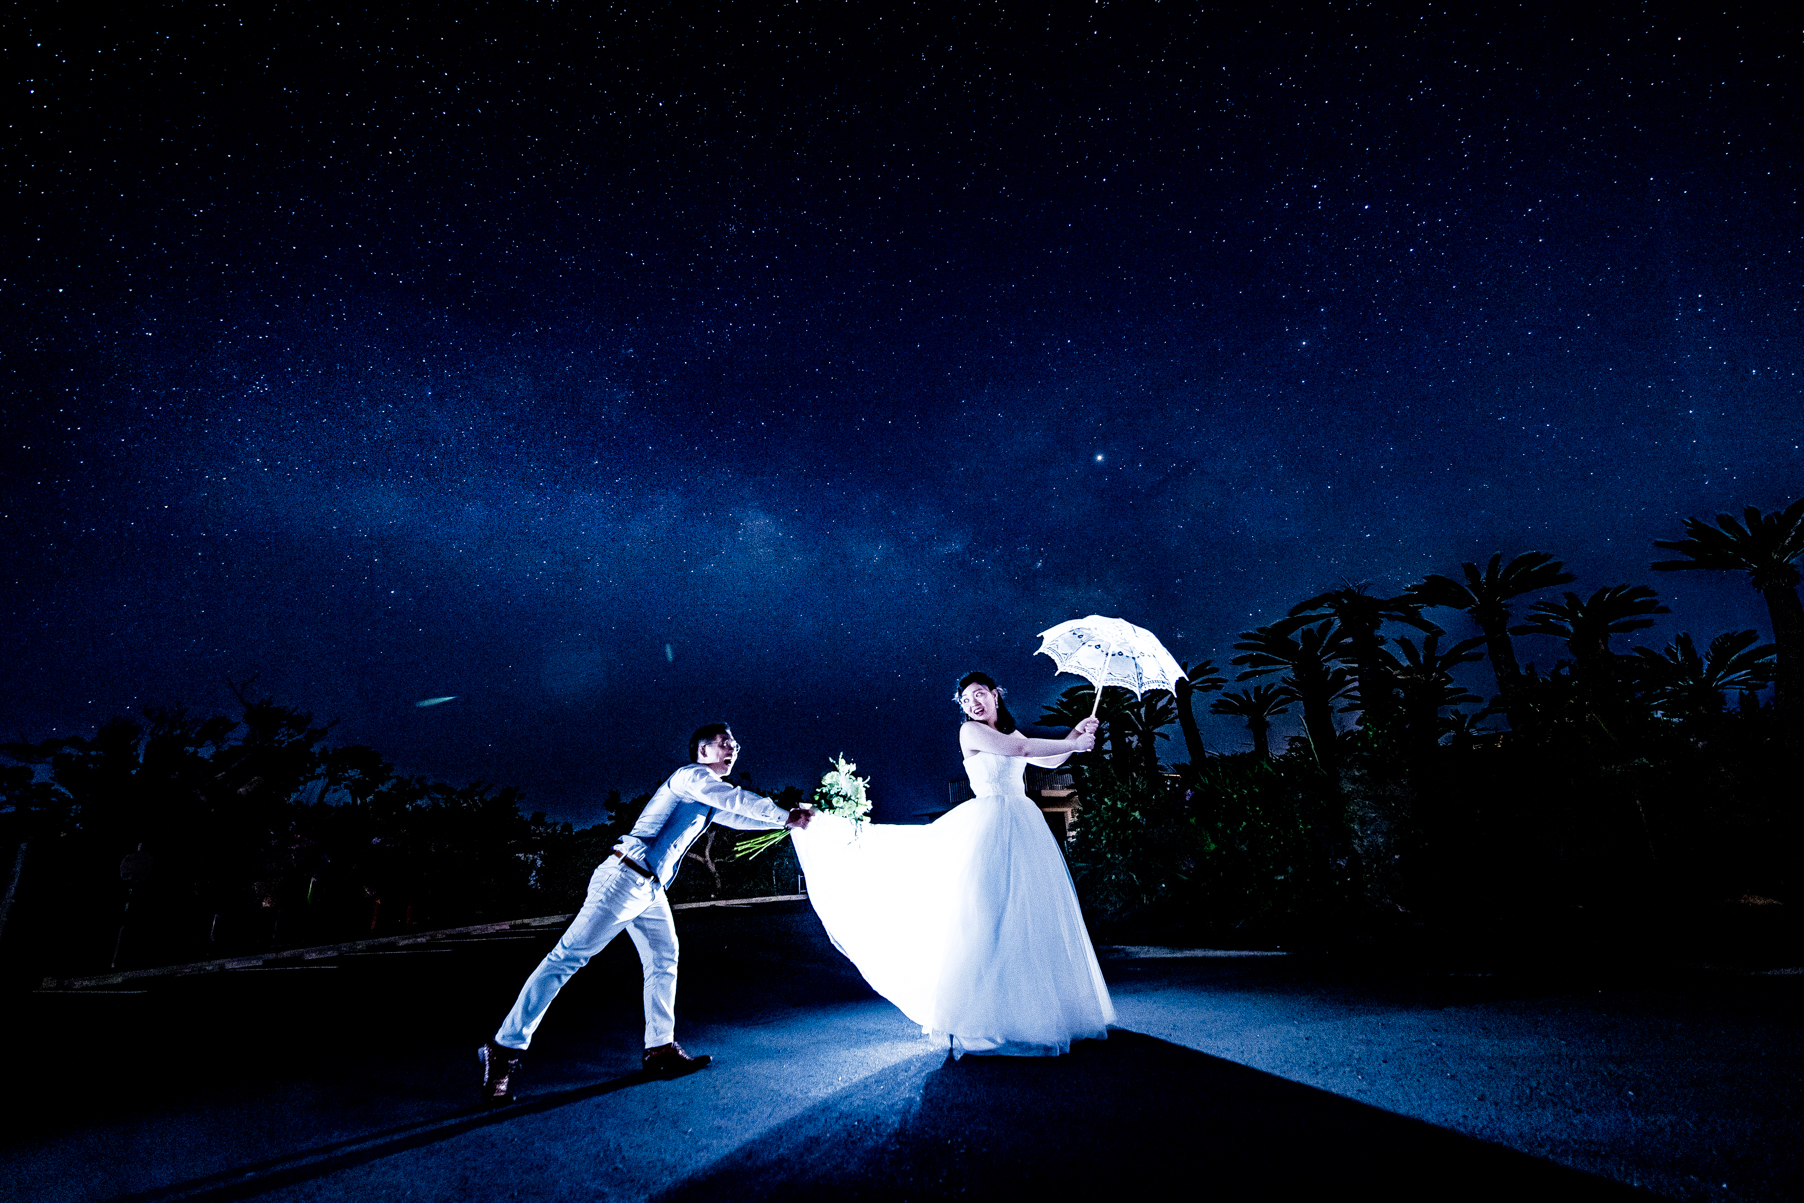 奄美大島でウェディングやロケーションのフォト撮影ならAMAMI PHOTO WEDDING